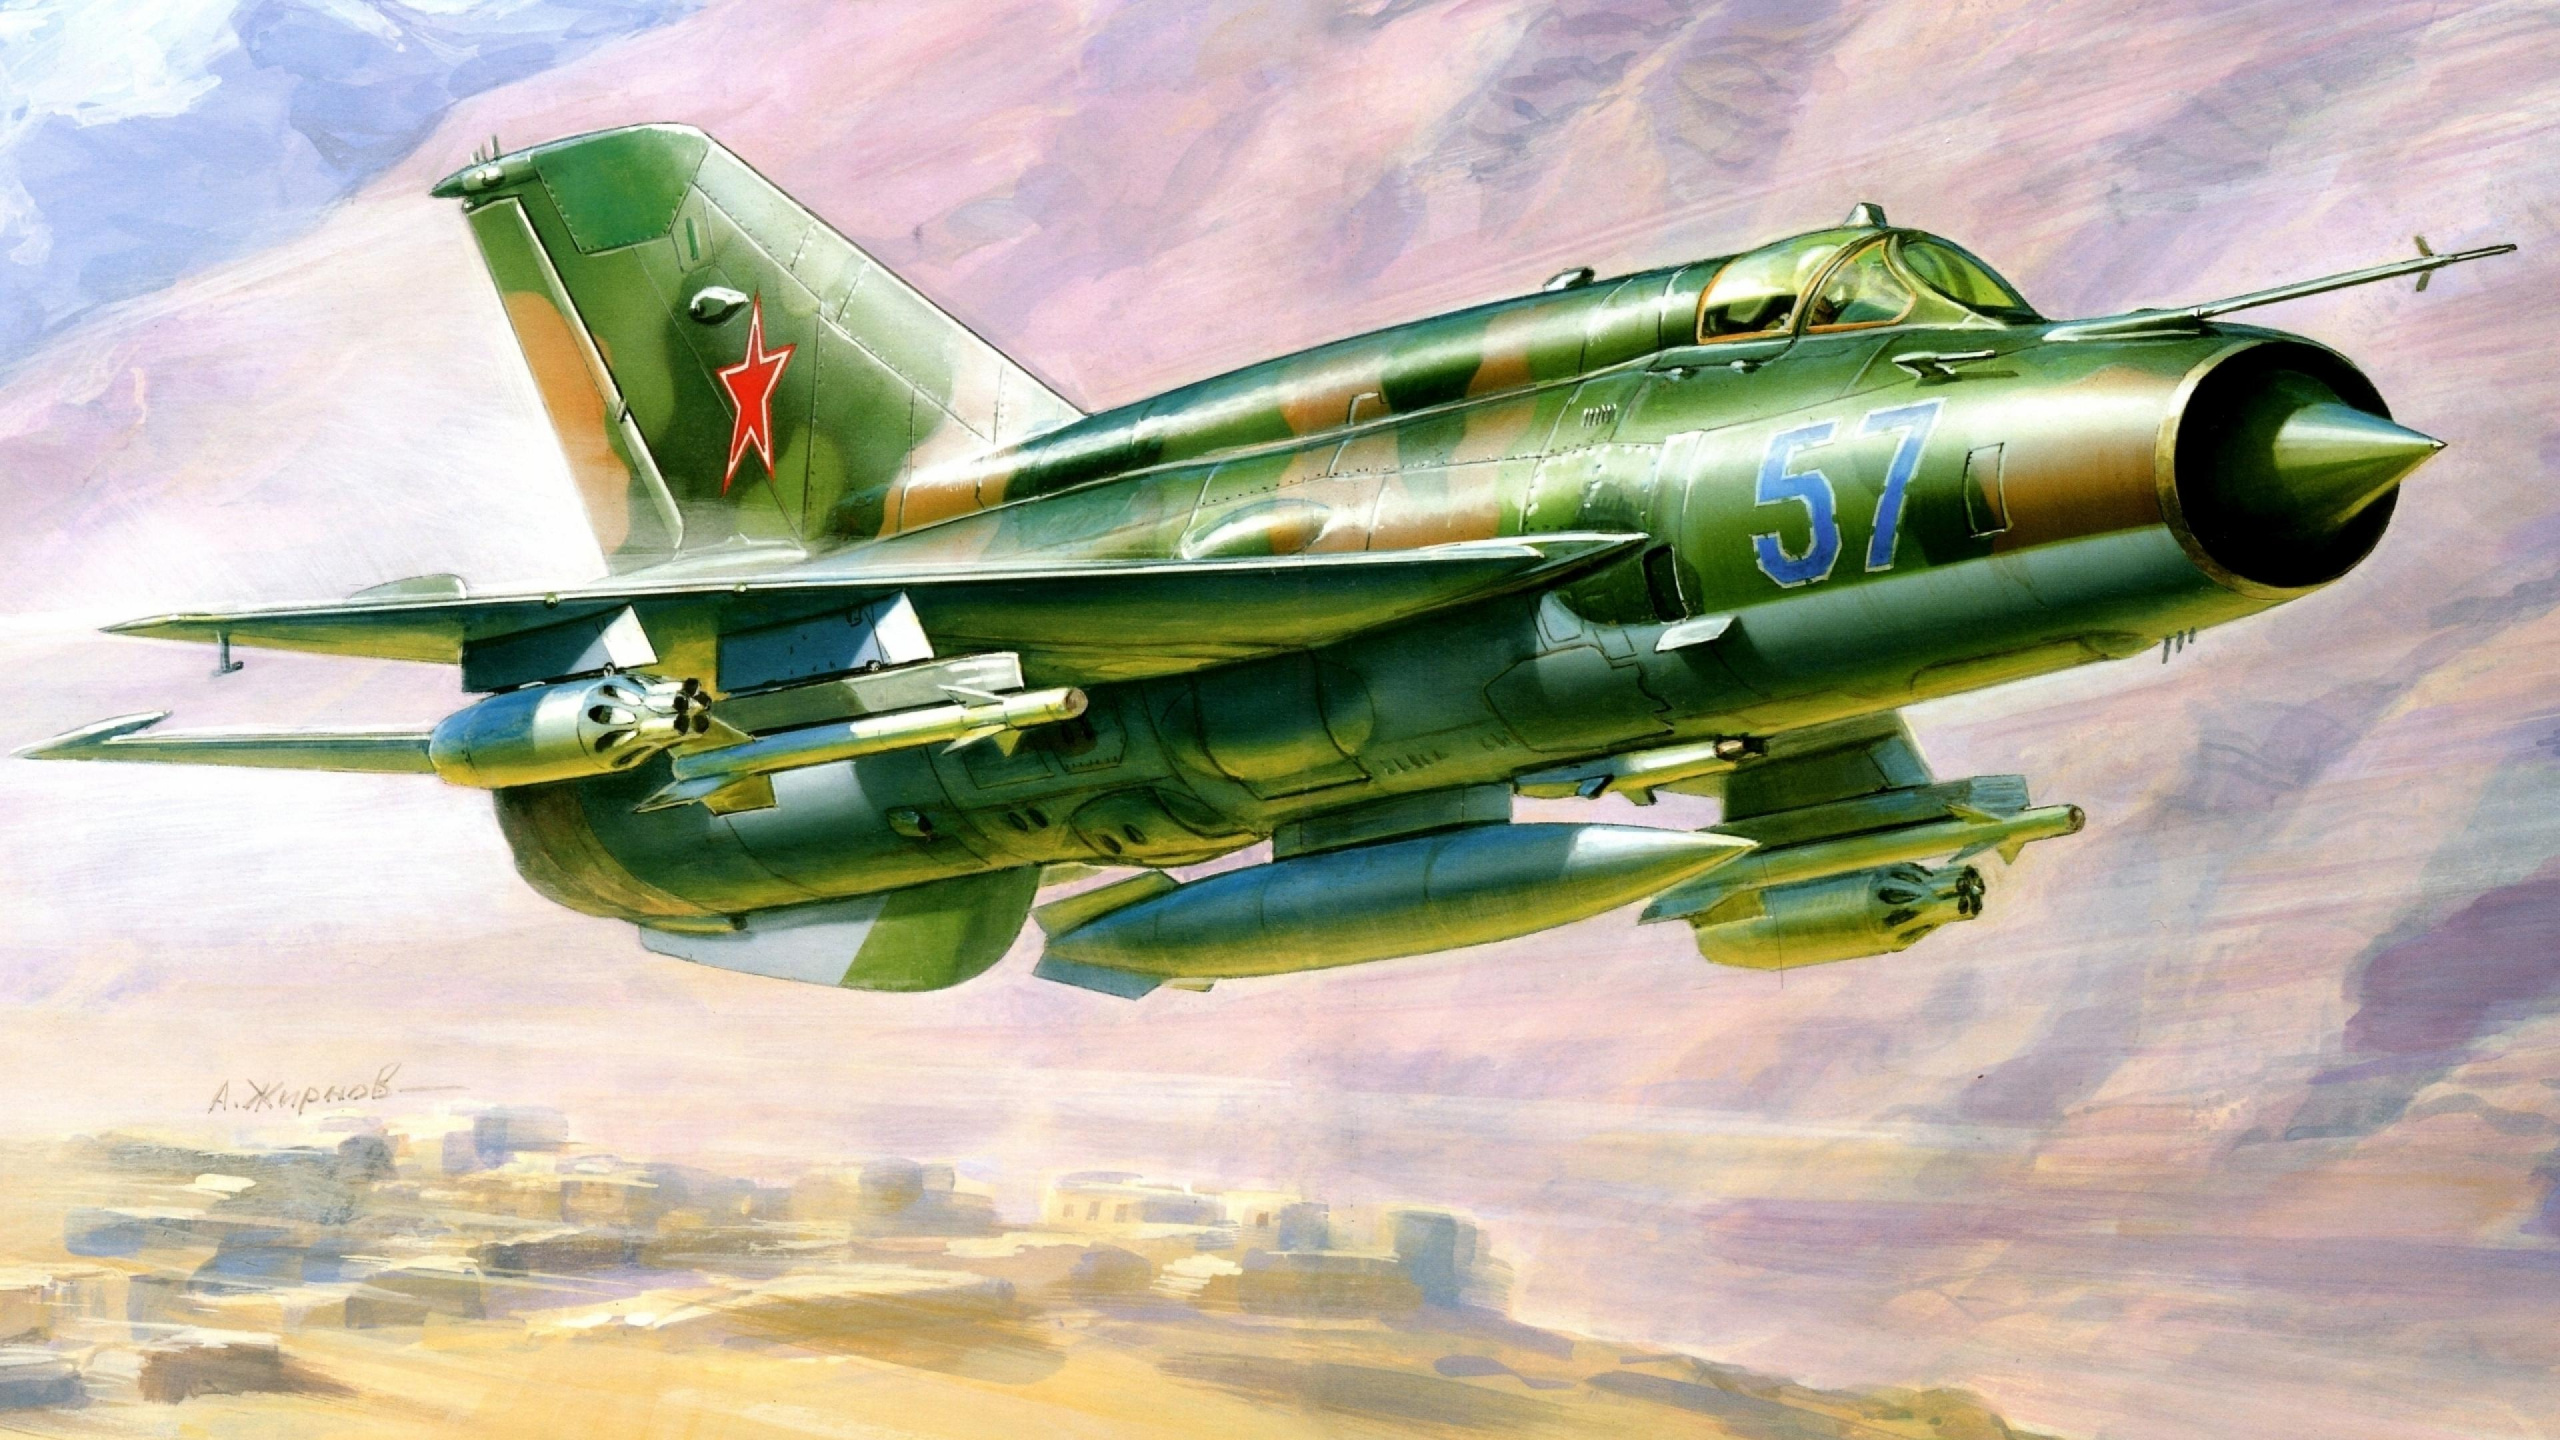 喷气式飞机, 航空, 军用飞机, 空军, 高扬古列维奇mig17 壁纸 2560x1440 允许